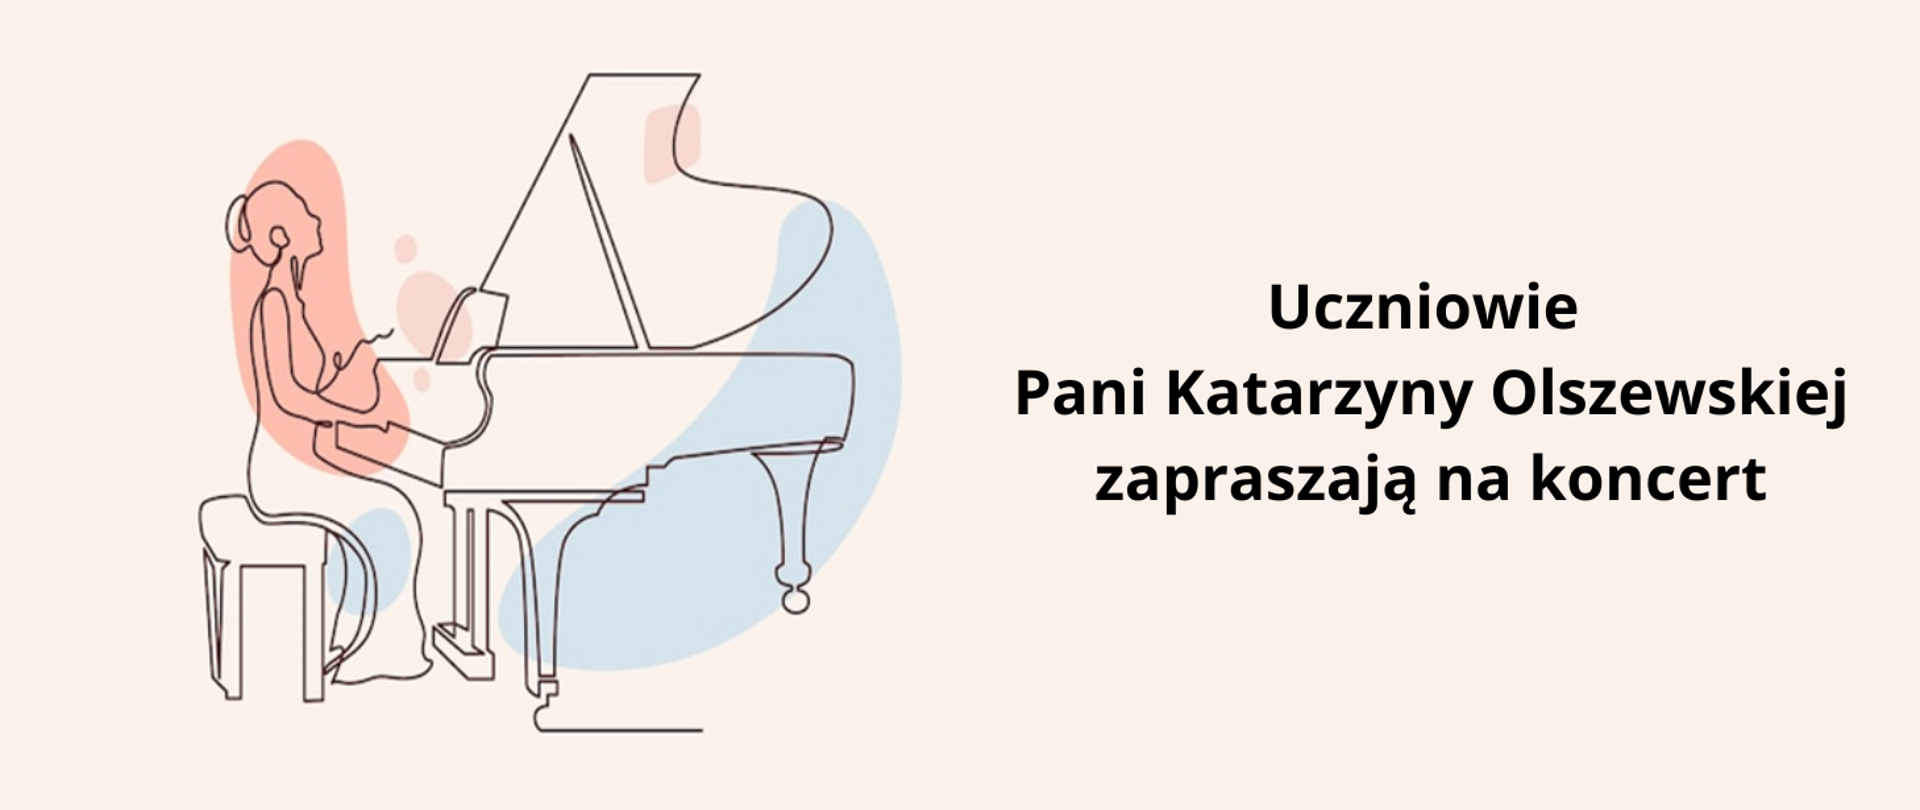 Na kremowym tle po lewej stronie karykatura fortepianu i grającej na nim kobiety. Po prawej stronie czarny napis: "uczniowie Pani Katarzyny Olszewskiej zapraszają na koncert".